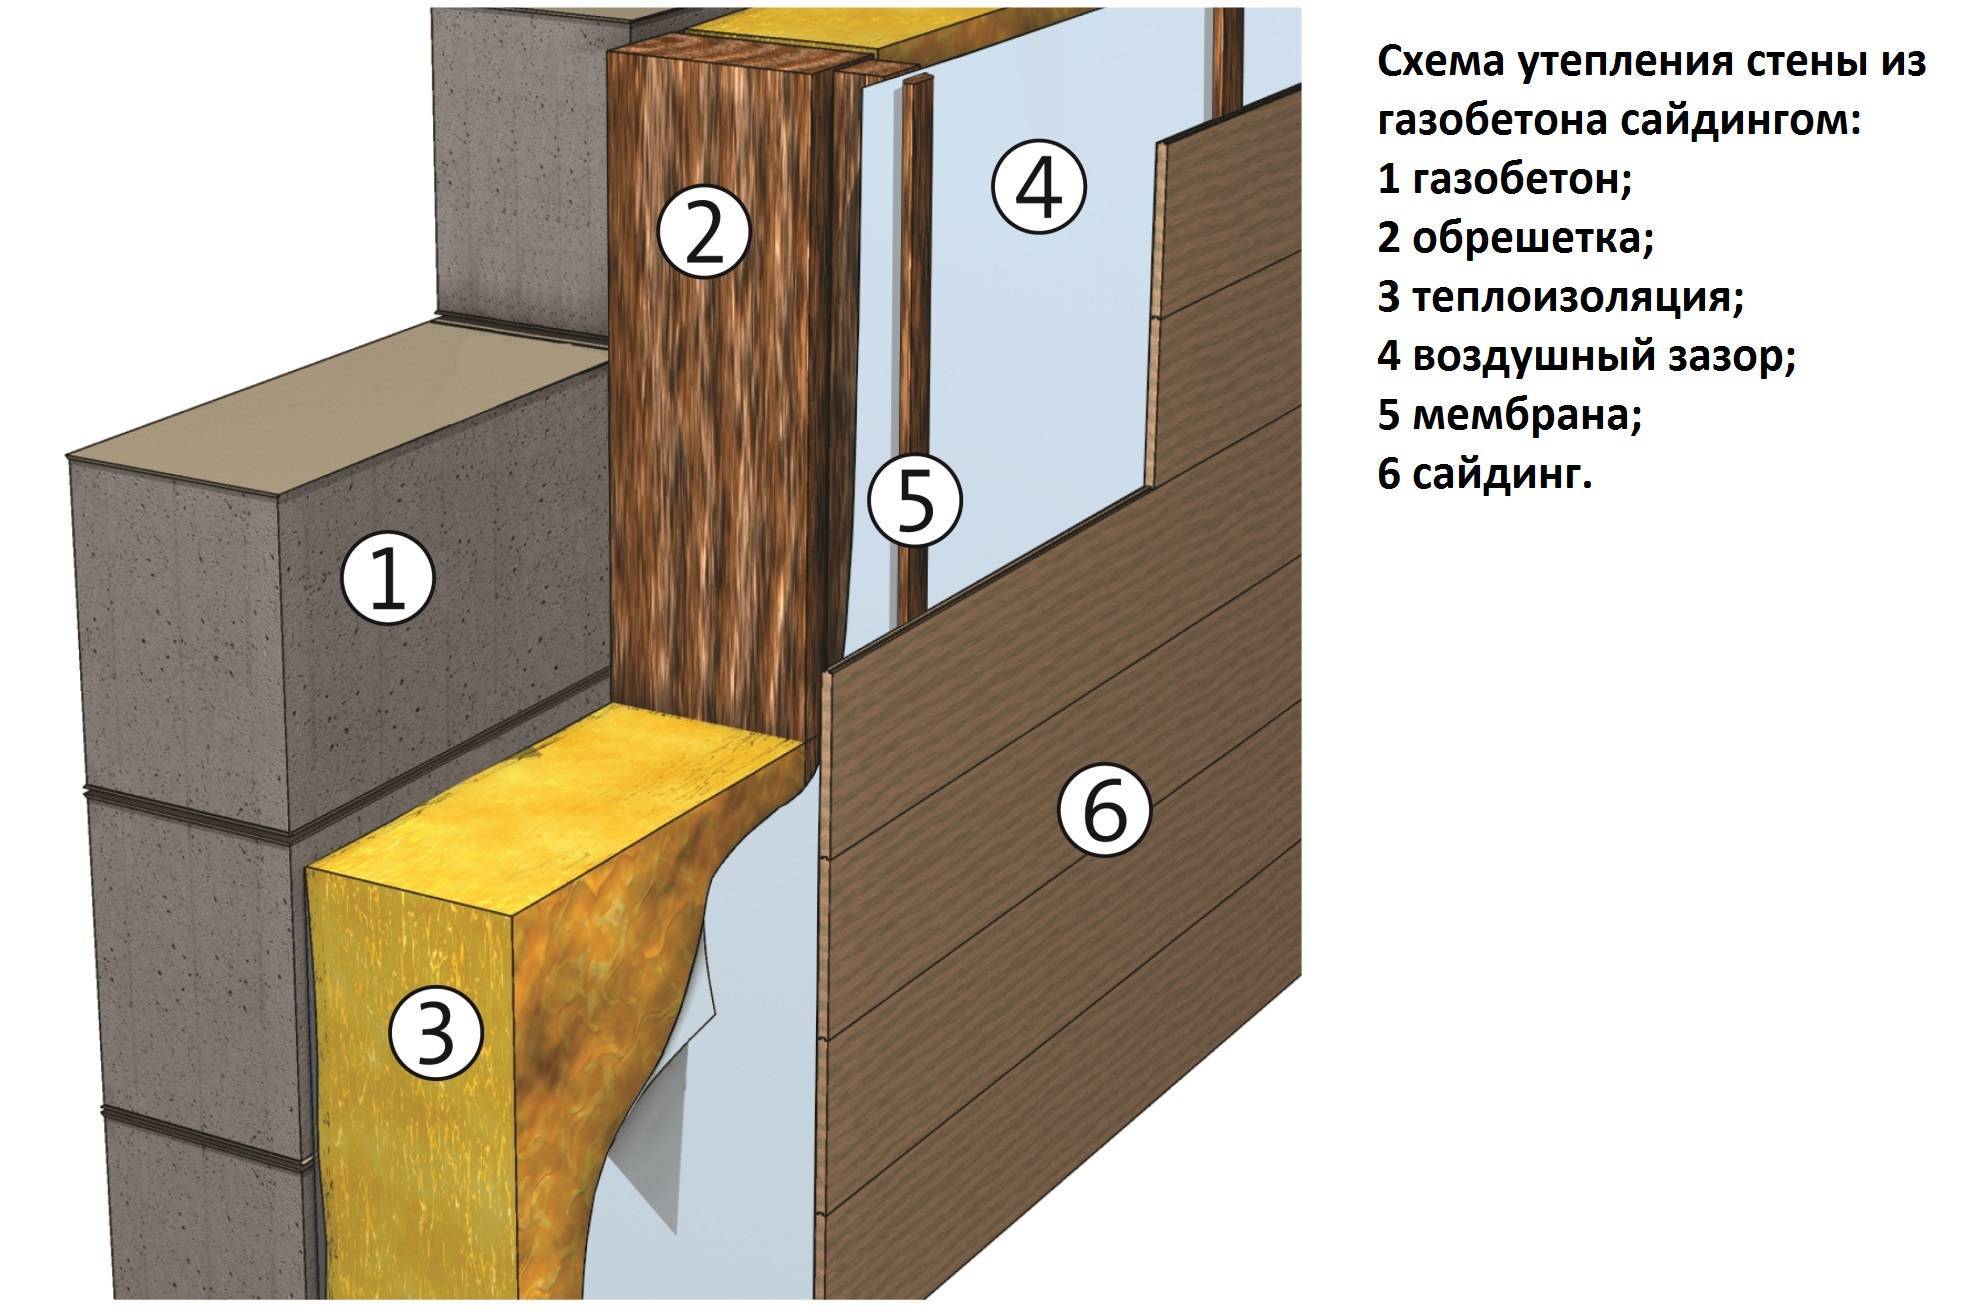 Как правильно утеплить дом из пеноблоков снаружи строительство домов и конструкций из пеноблоков